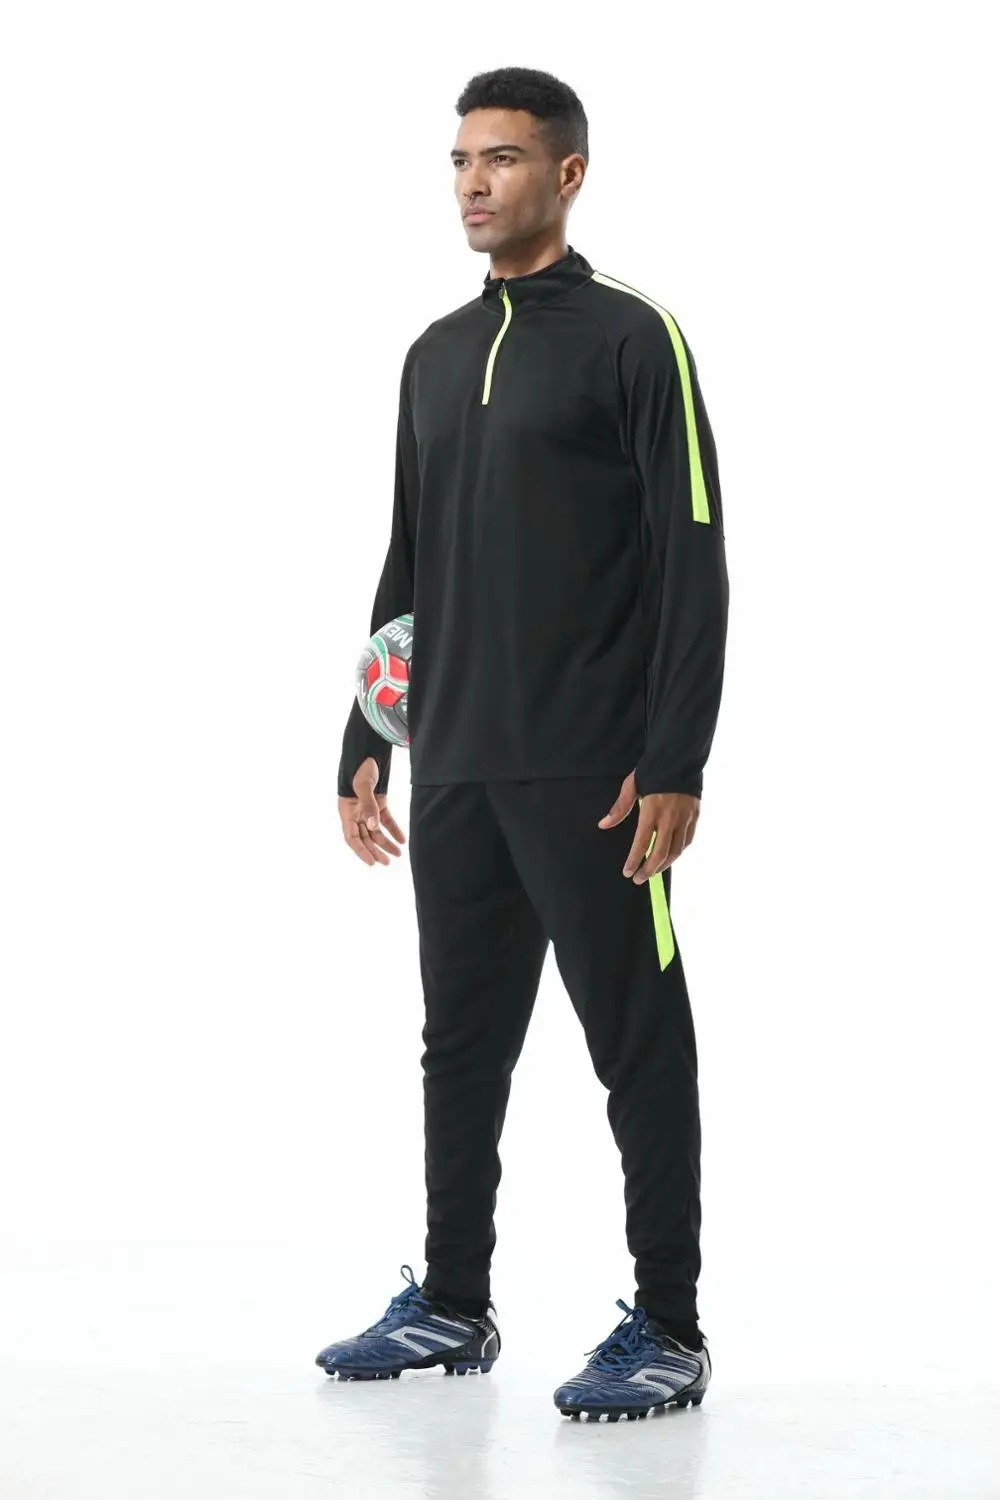 Мужская спортивная одежда футбольные тренировочные костюмы комплекты футбольные спортивные костюмы с длинными рукавами трикотажные изделия для футбола командная форма спортивный комплект для бега - Цвет: 922 6019 black sets